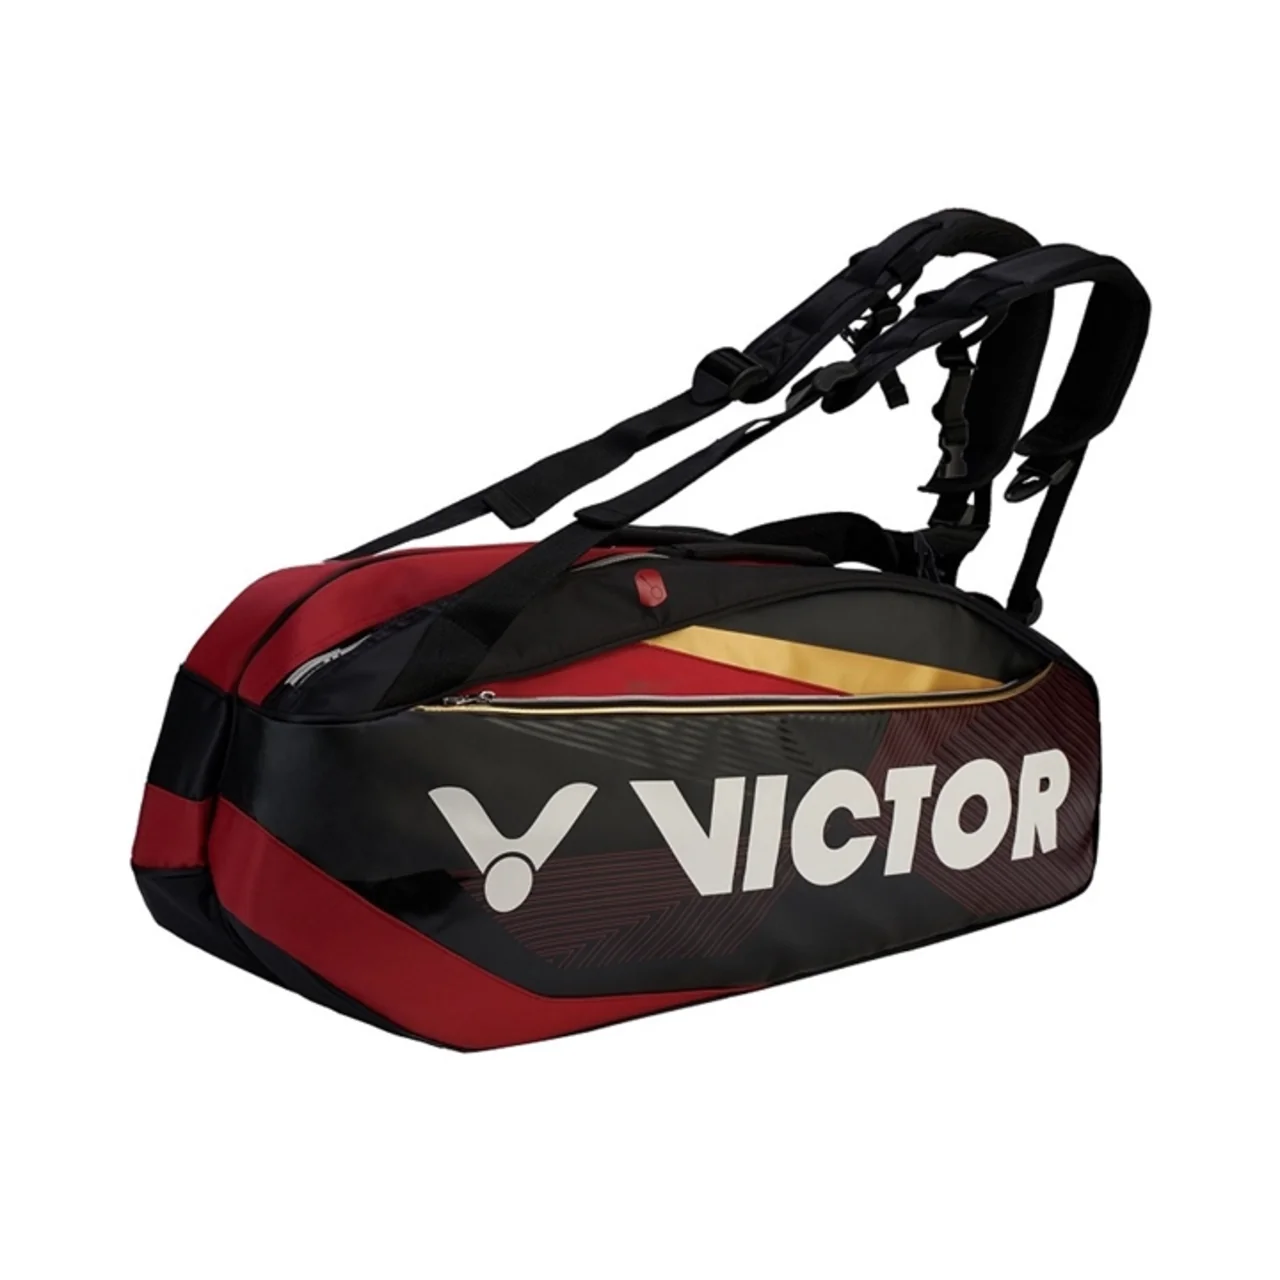 Victor Bag BR9209 Black/Red 2020